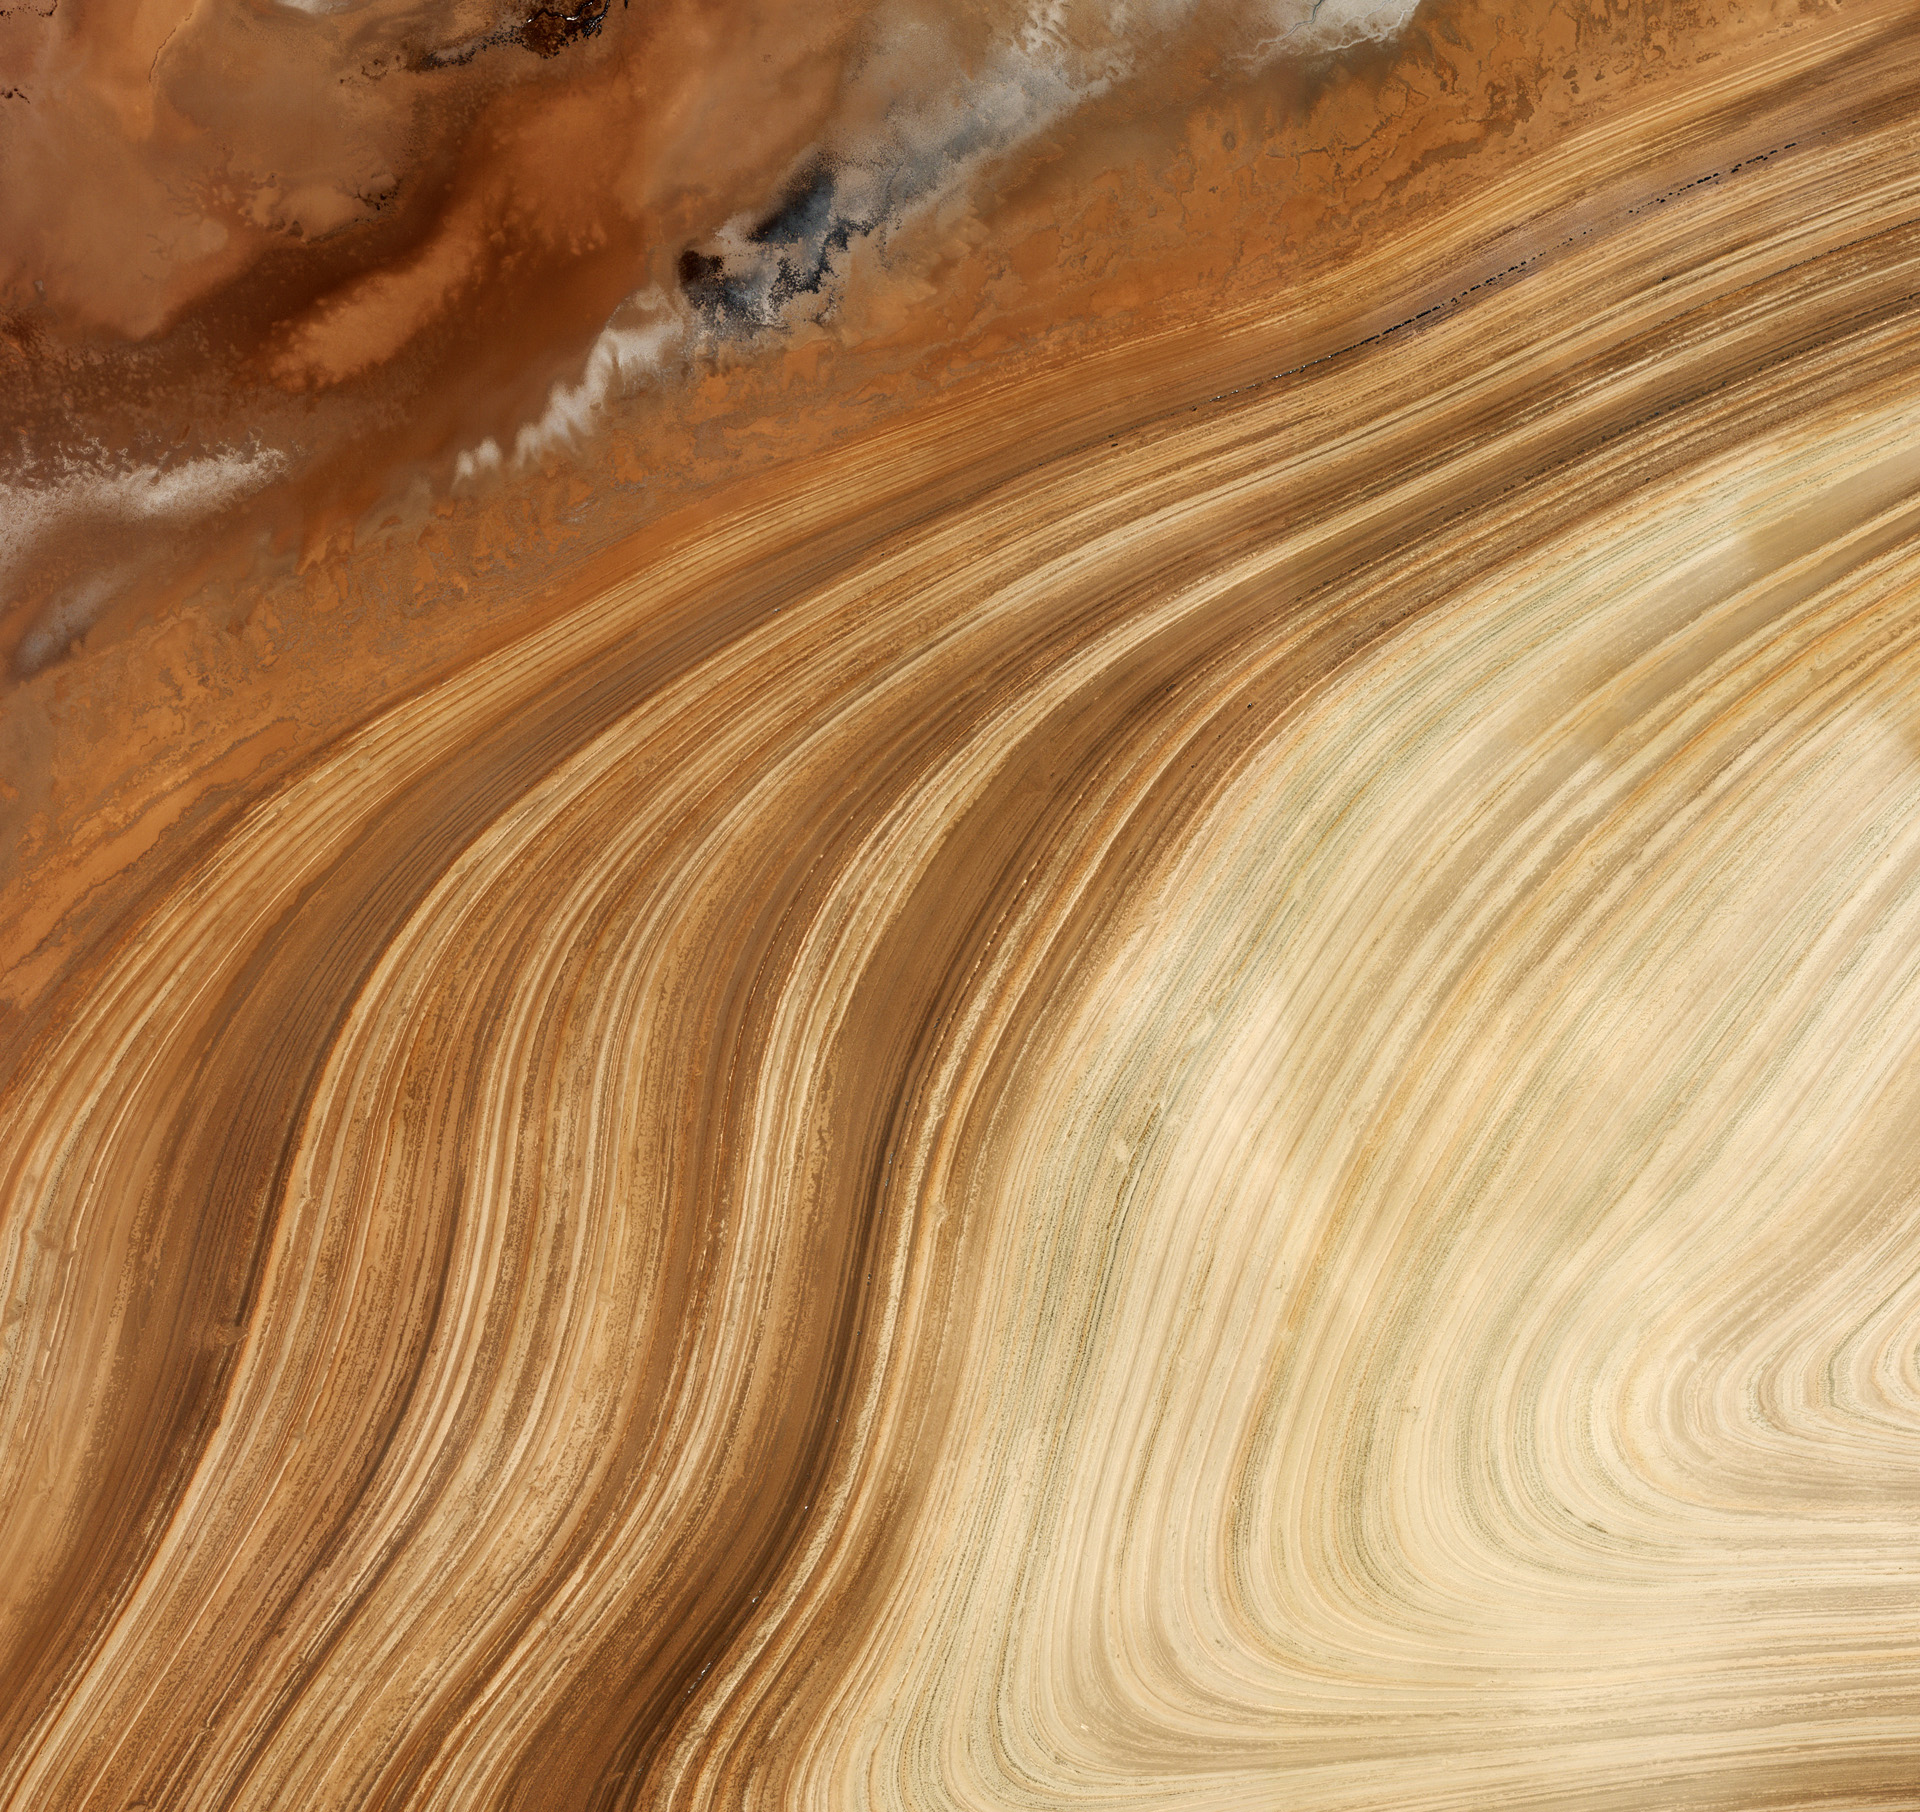 Cette image du désert de sel iranien a été prise le 13 novembre 2008 par Ikonos 2, un satellite commercial qui fournit une imagerie panchromatique et multispectrale à très haute résolution, jusqu'à 1 m par pixel. © European Space Imaging (EUSI)